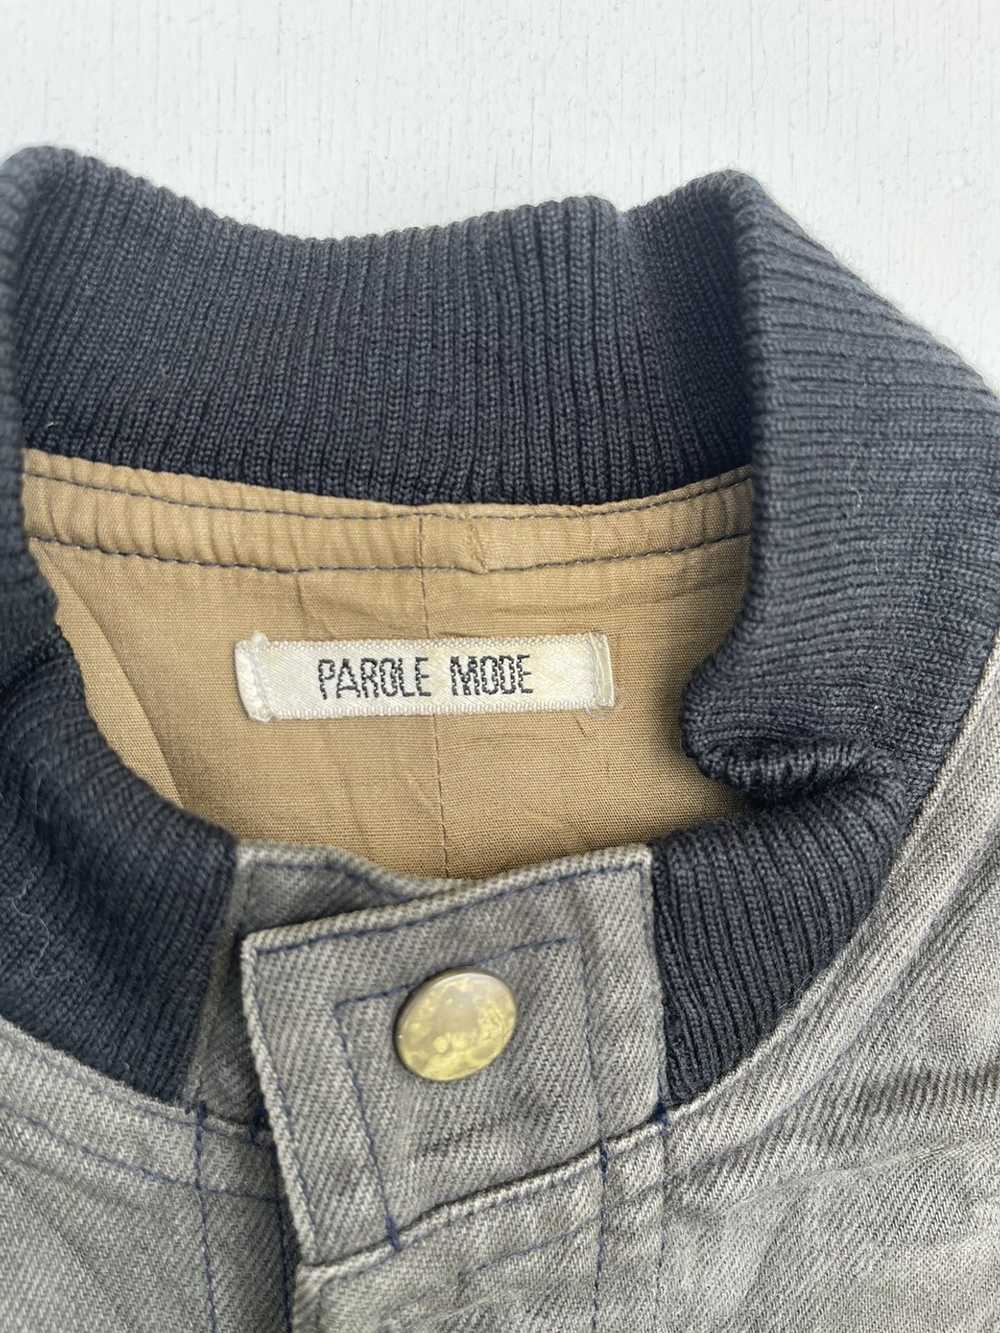 Japanese Brand Parole Mode Denim Jacket - image 3